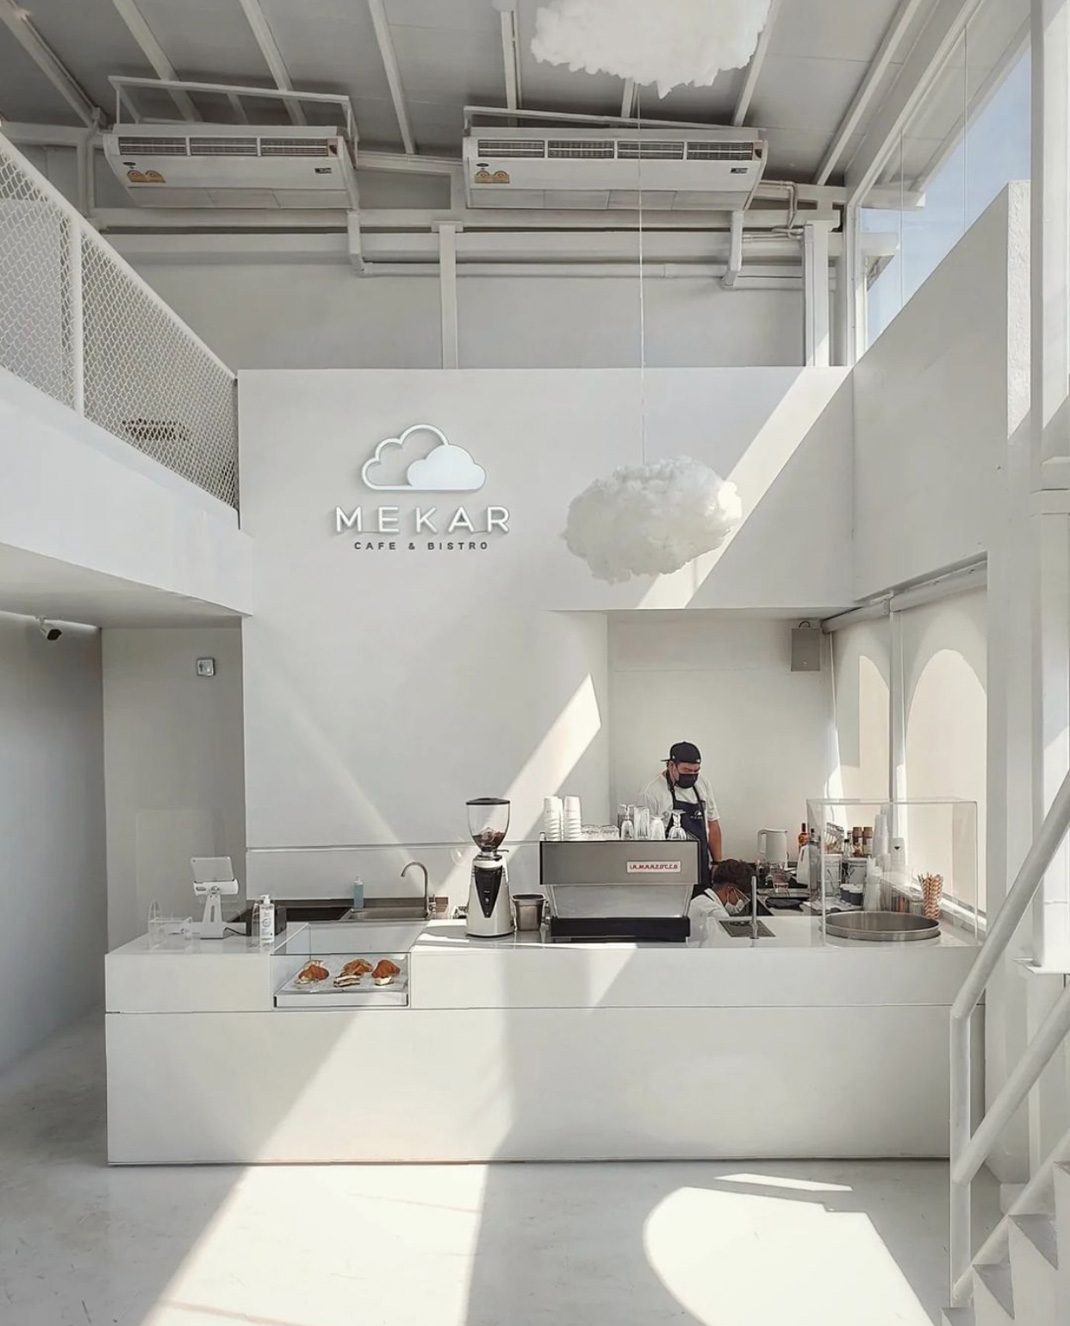 简餐厅MEKAR Cafe & Bistro 泰国 咖啡店 简餐 白色 logo设计 vi设计 空间设计